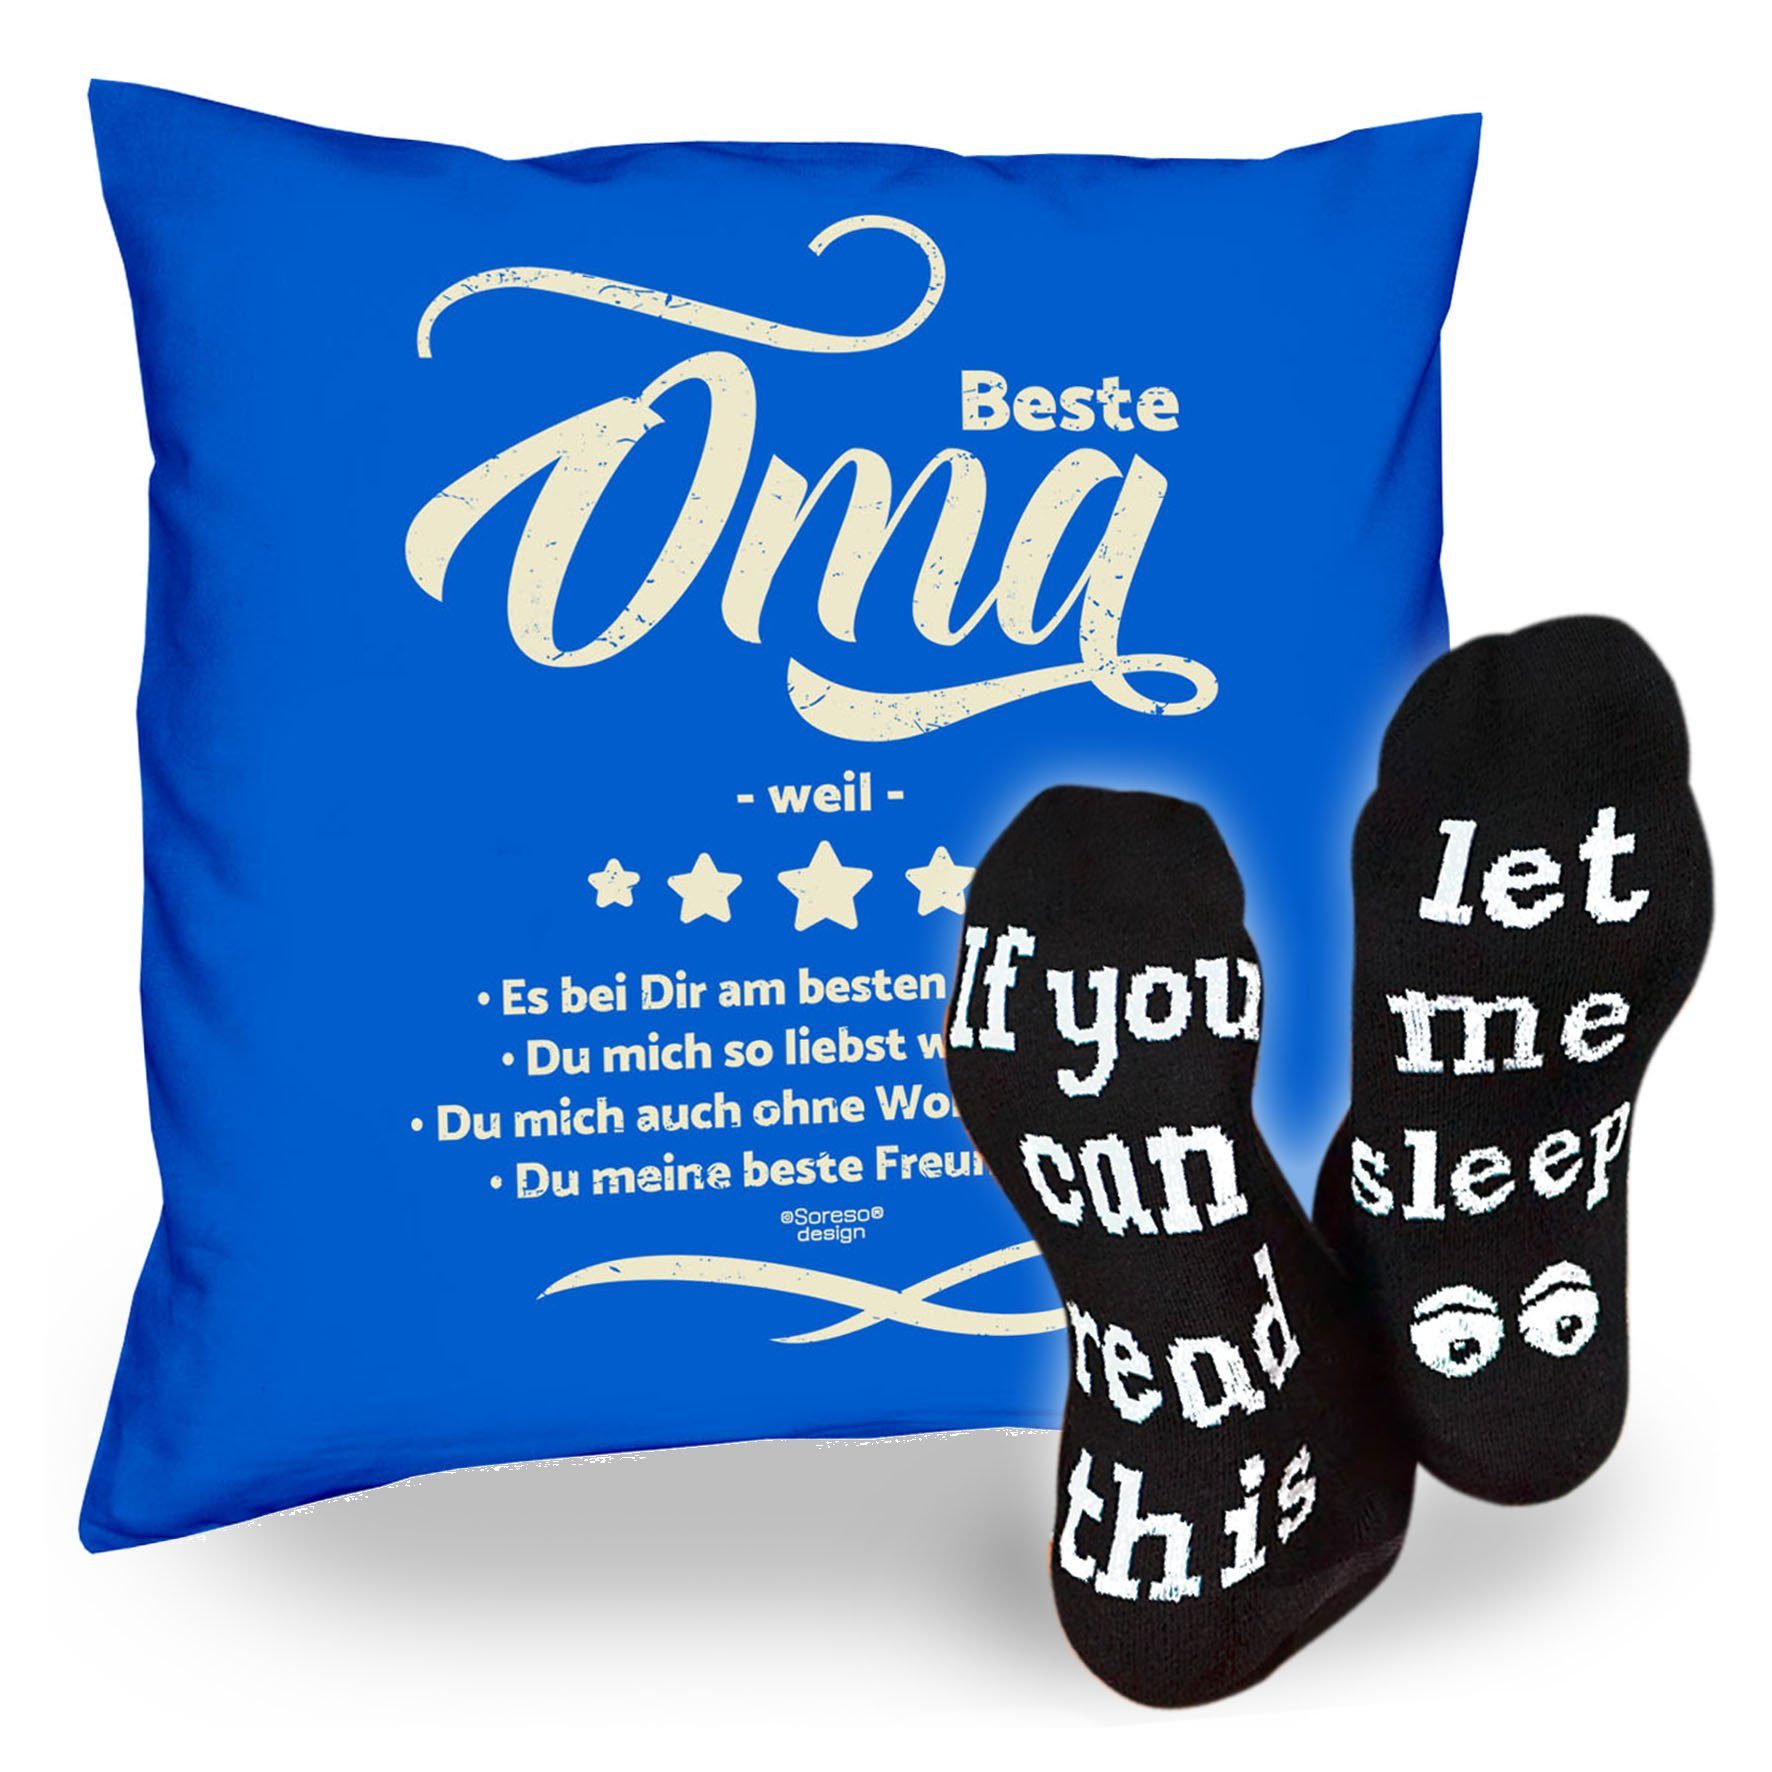 & Sprüche Geschenkidee weil royal-blau Kissen Weihnachtsgeschenk Oma Soreso® Sleep, Beste Socken Dekokissen